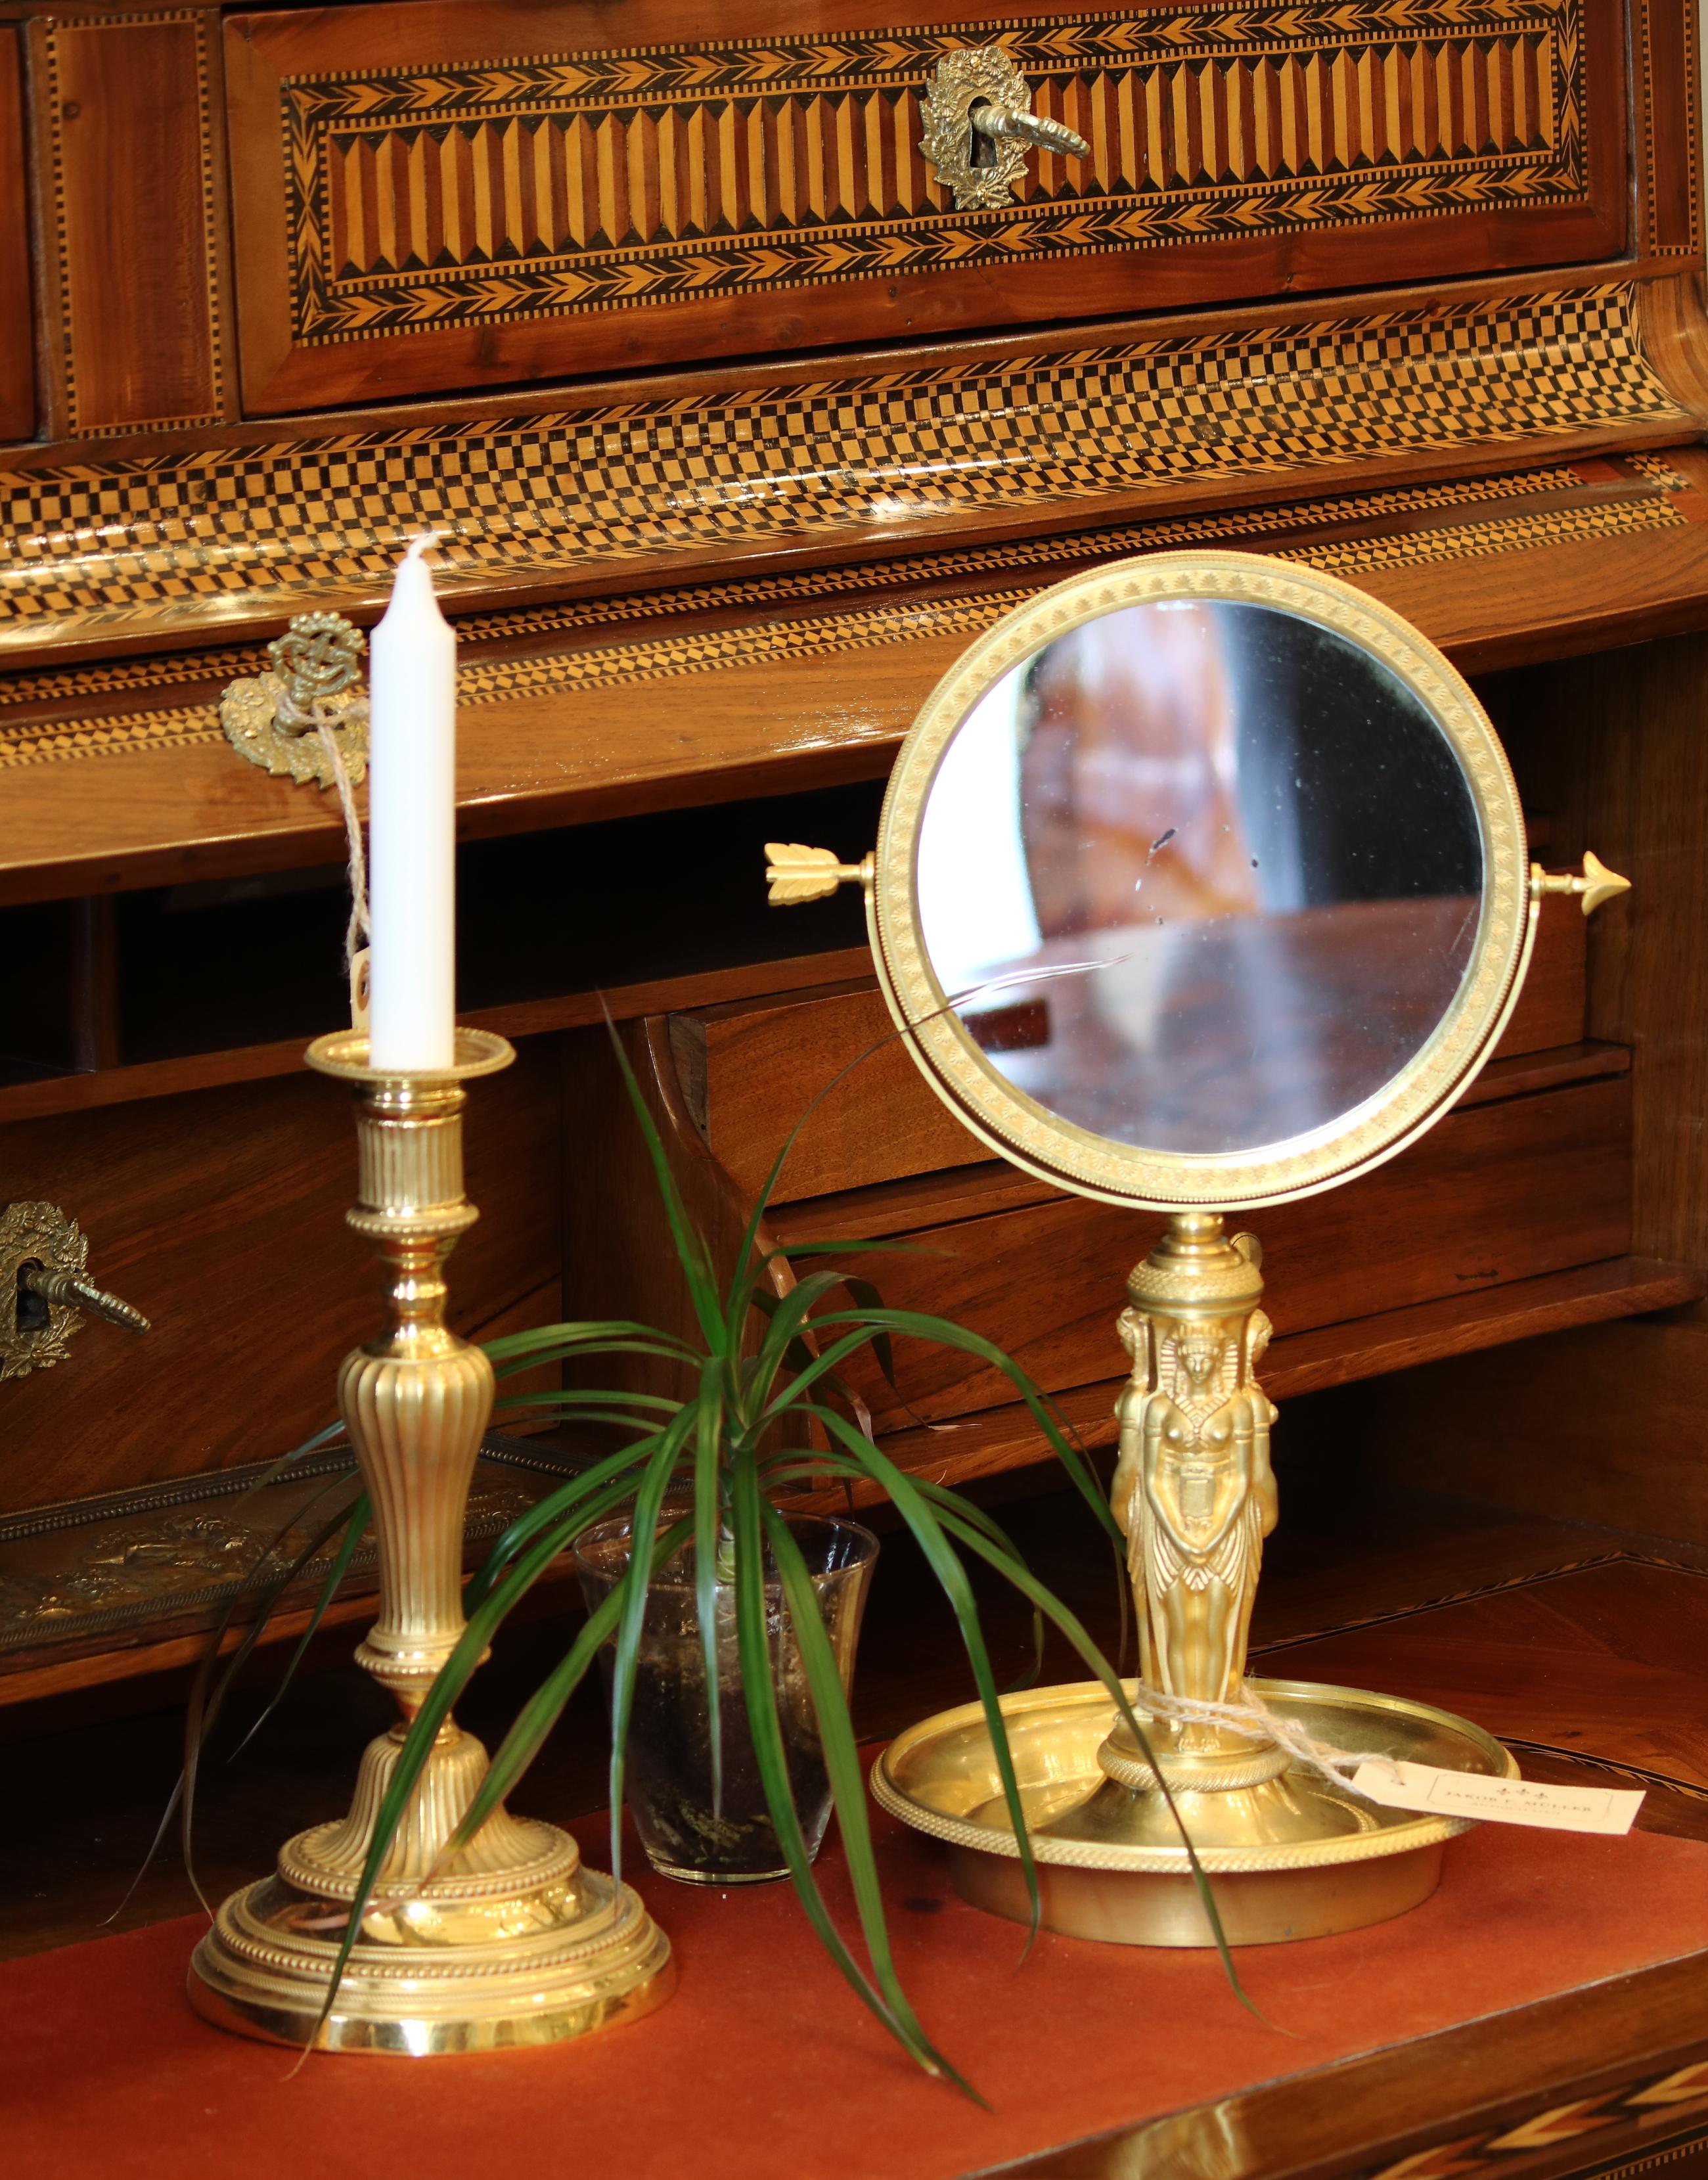 miroir de table en bronze doré du XIXe siècle, style Empire français Charles X et renaissance égyptienne

Une tige sculptée en forme de trois femmes en costume d'Égypte ancienne, debout et dos contre dos, sortant d'une base ronde en forme de plat